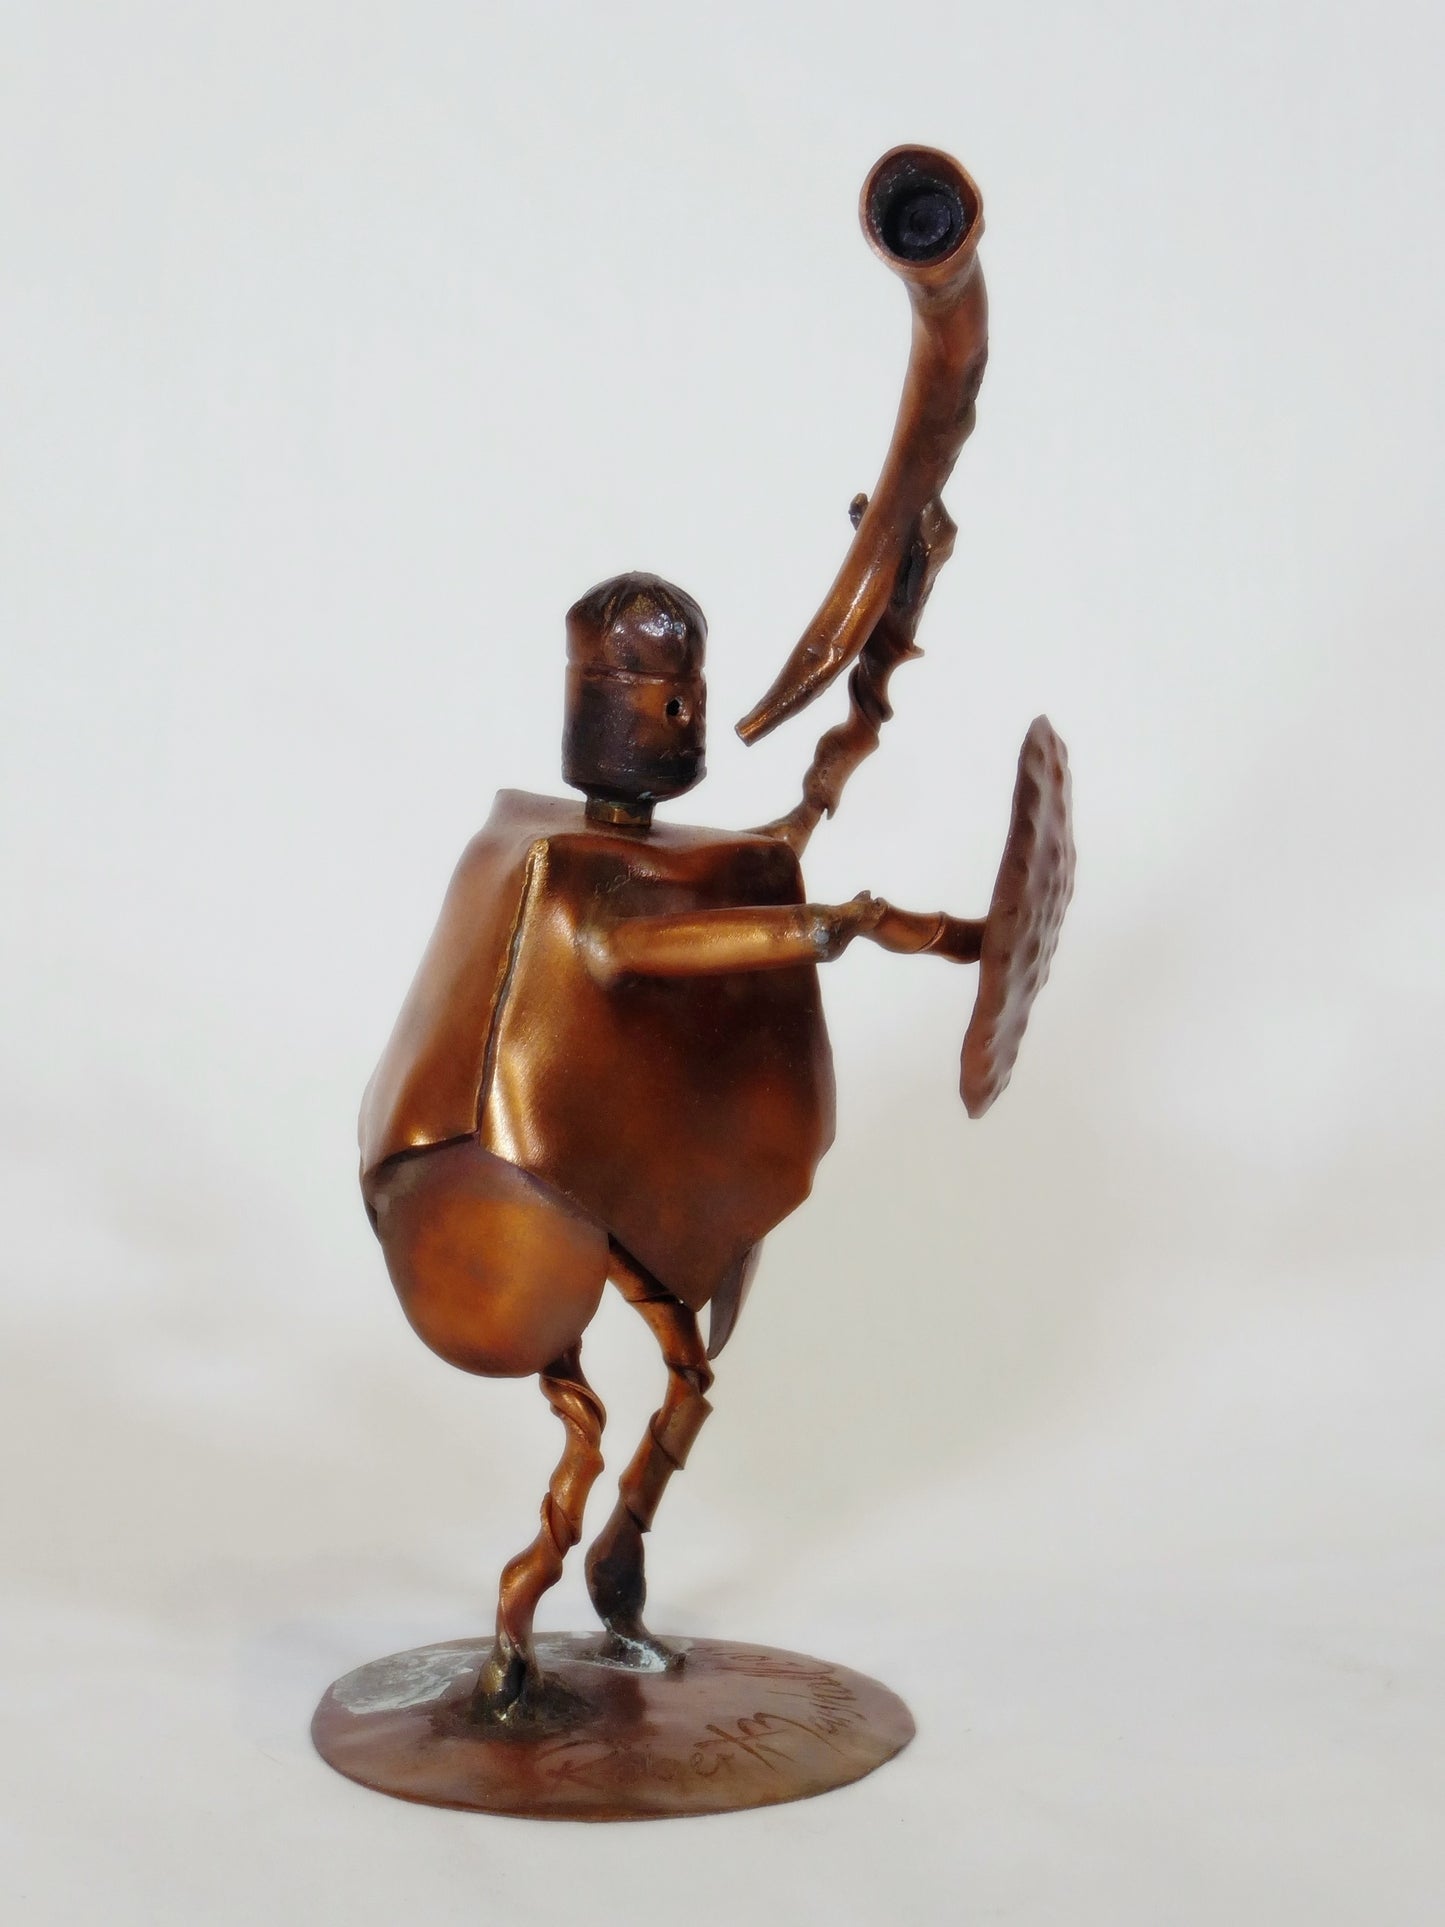 Steam Punk Warrior copper sculpture